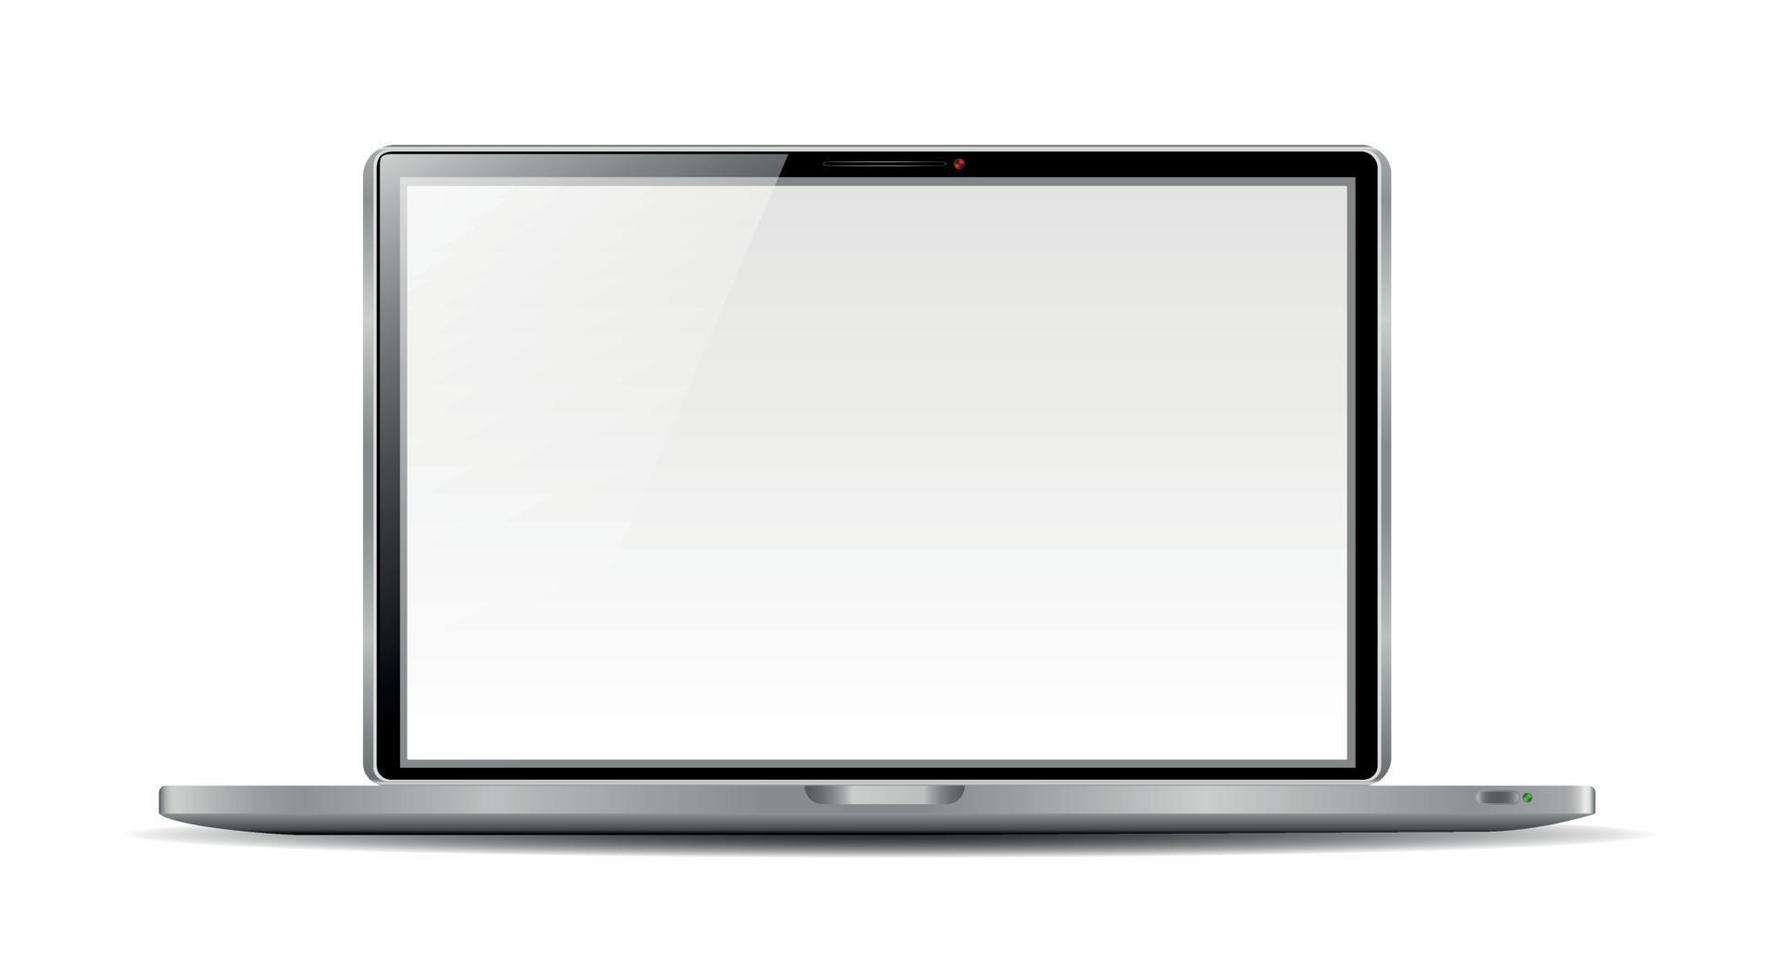 ordinateur portable réaliste dans un style maquette. ordinateur portable isolé sur fond blanc. illustration vectorielle vecteur